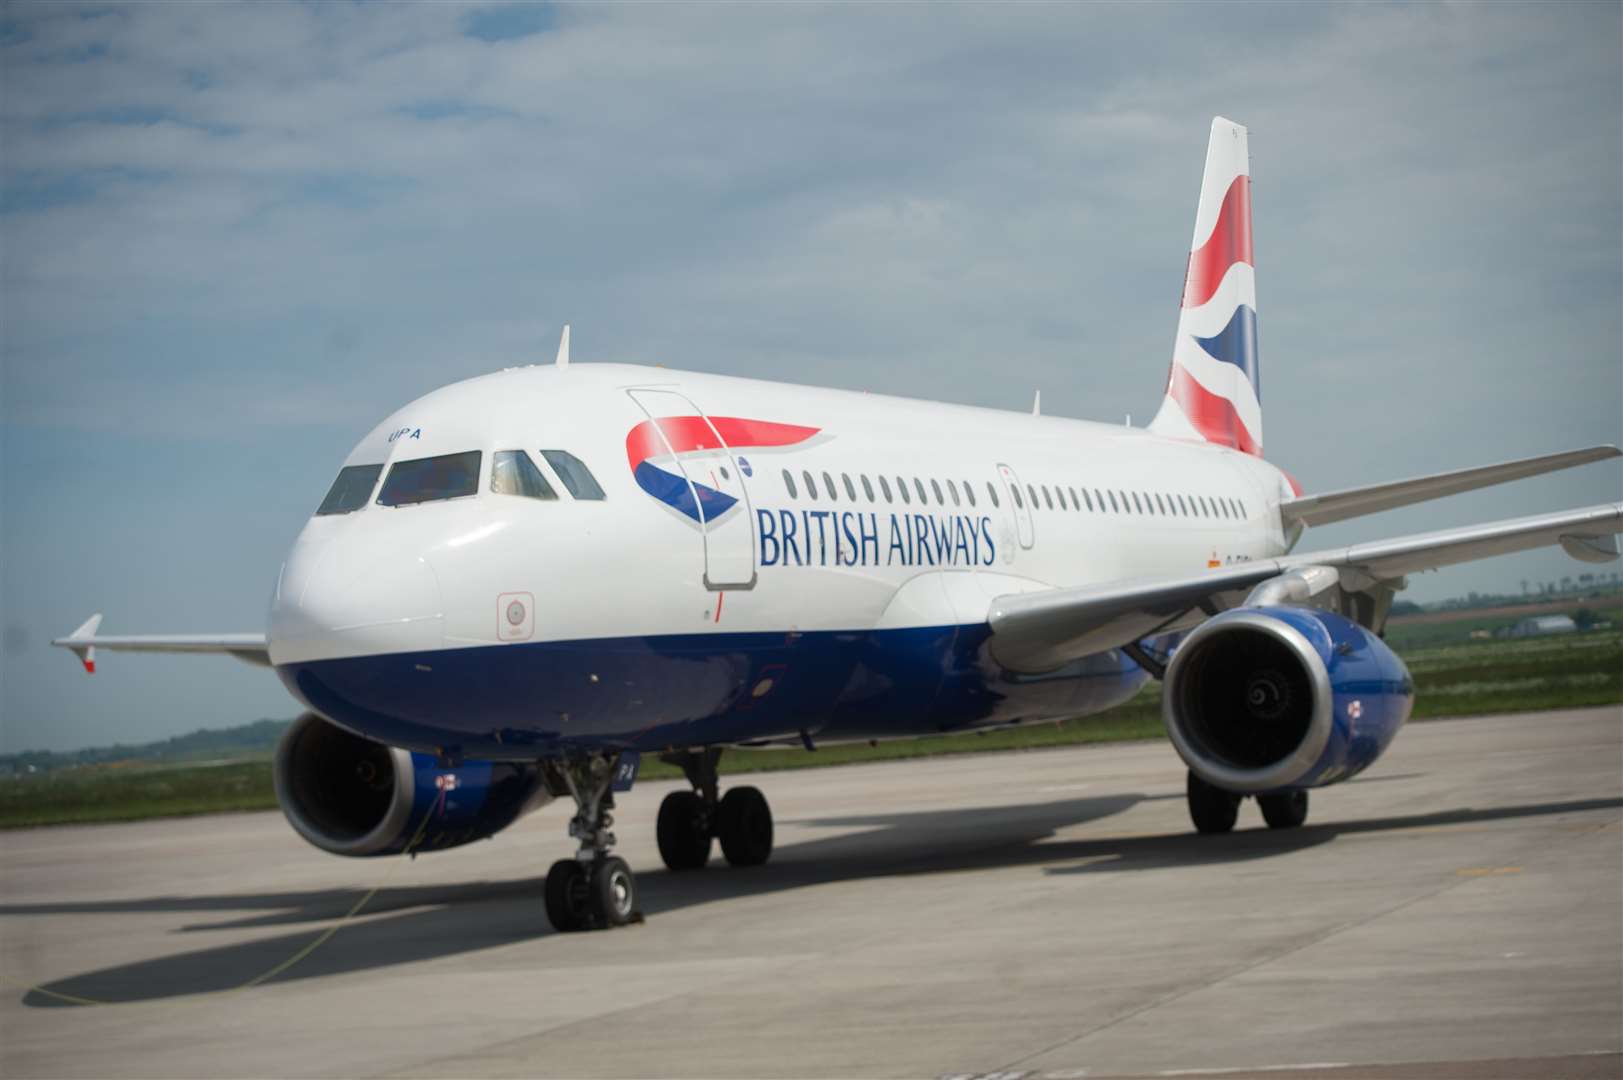 A British Airways jet. Picture: Callum Mackay.